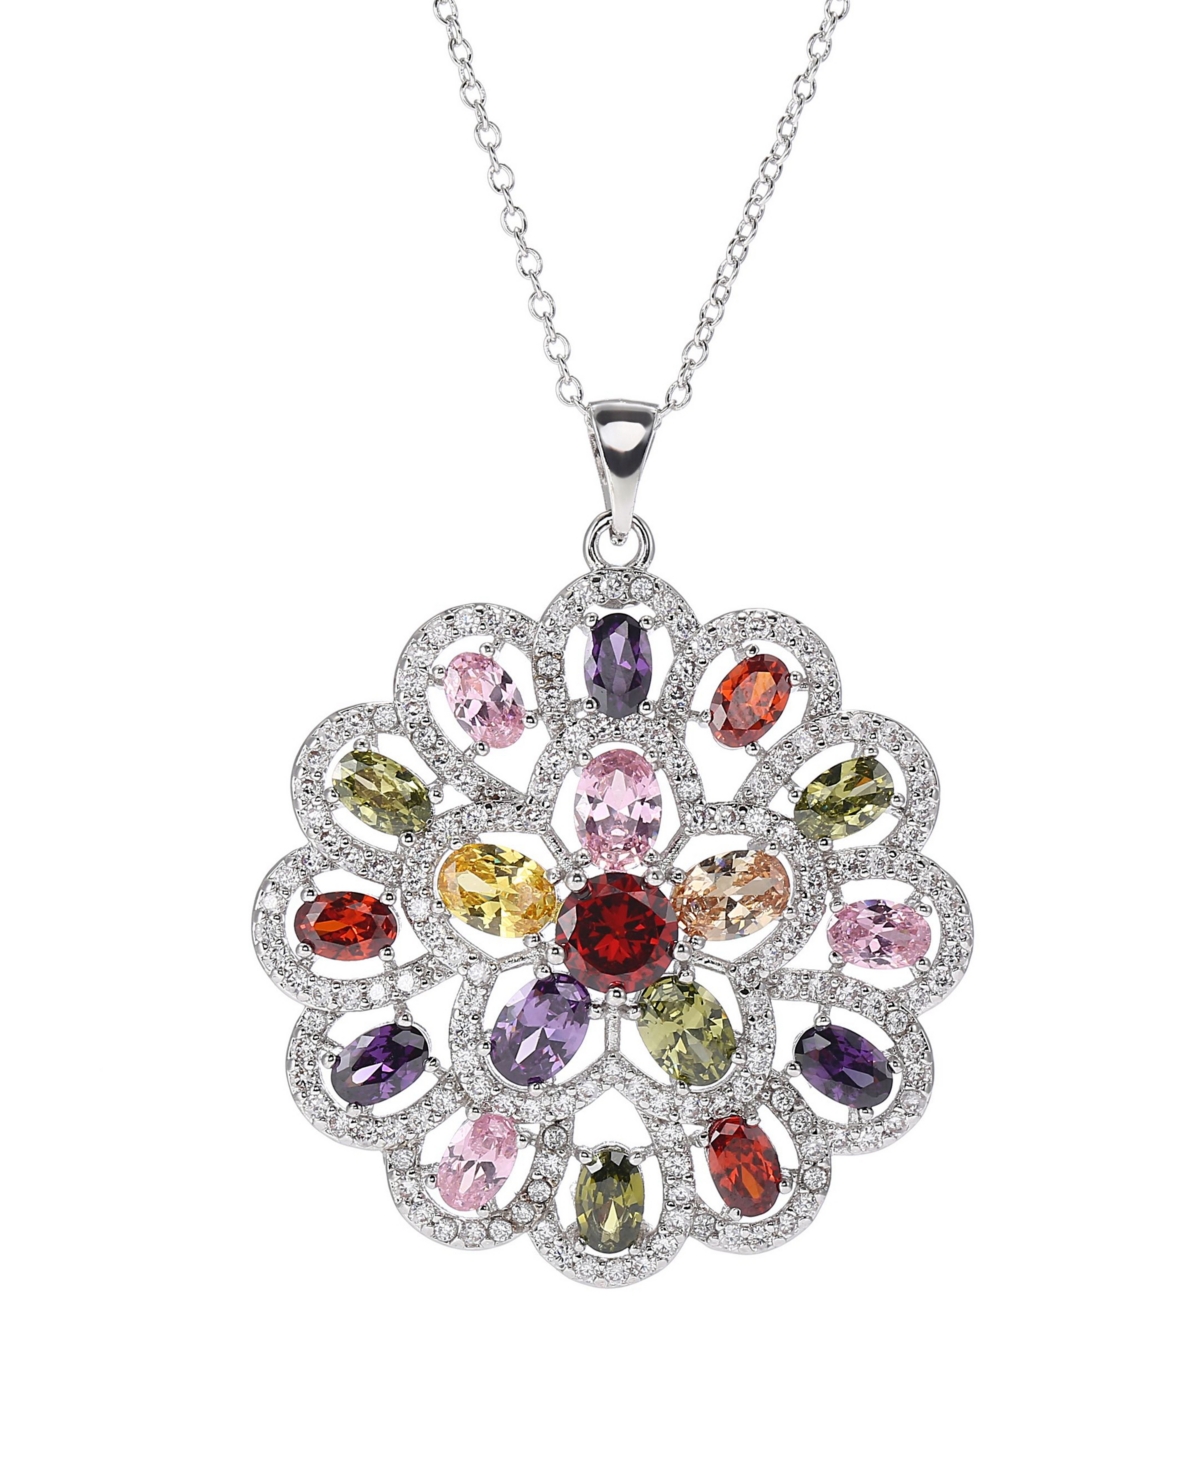 A & M Silver-Tone Multicolored Pendant Charm Necklace